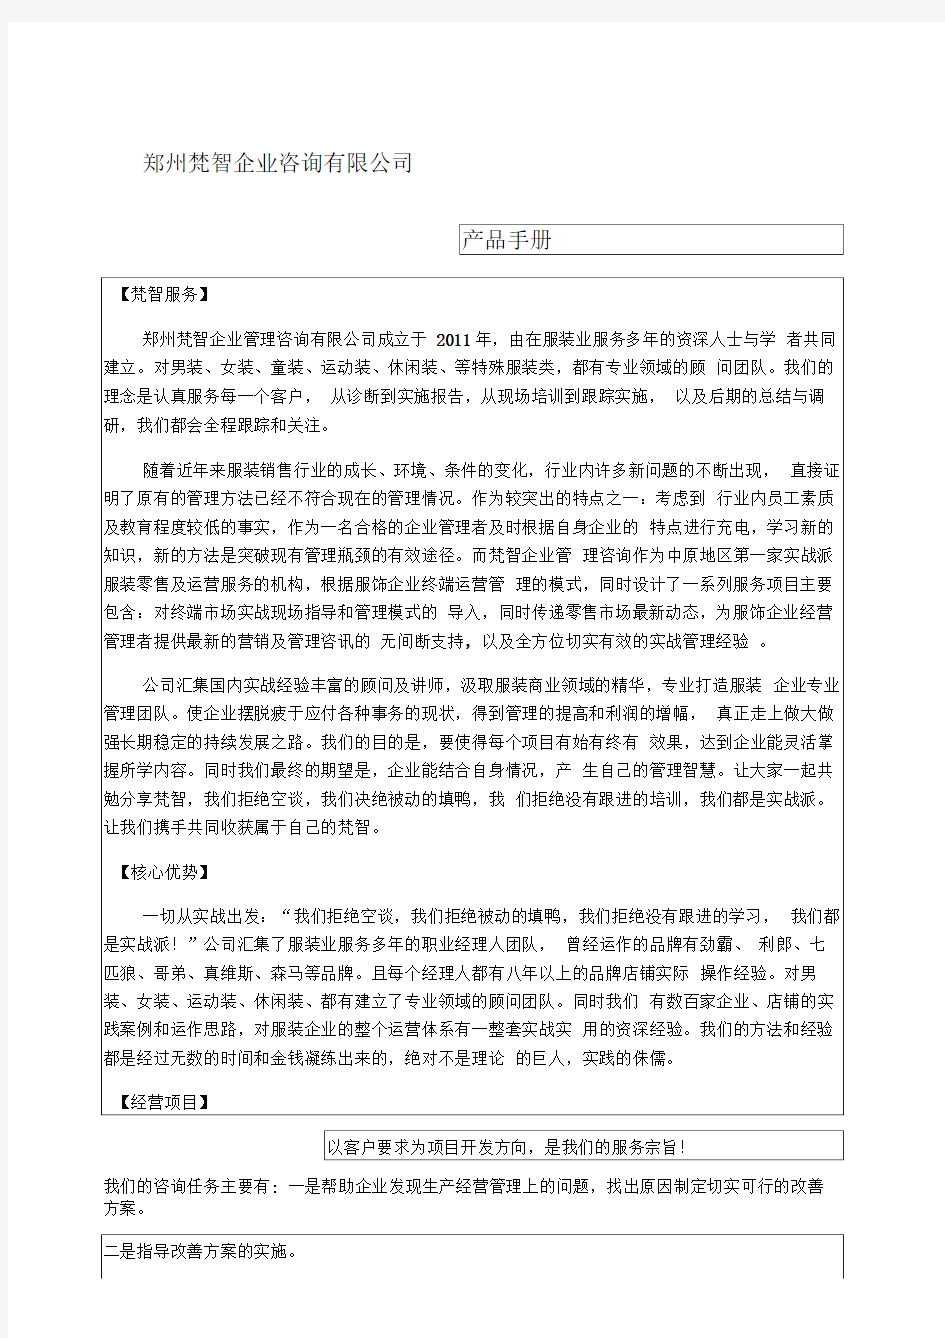 郑州企业咨询有限公司产品手册